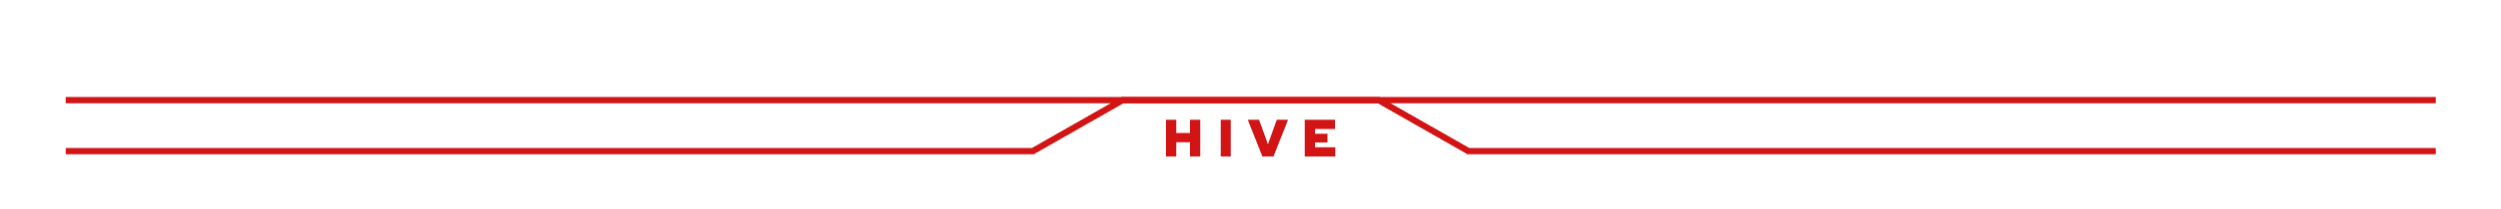 Arquivos gif - Blog Hive